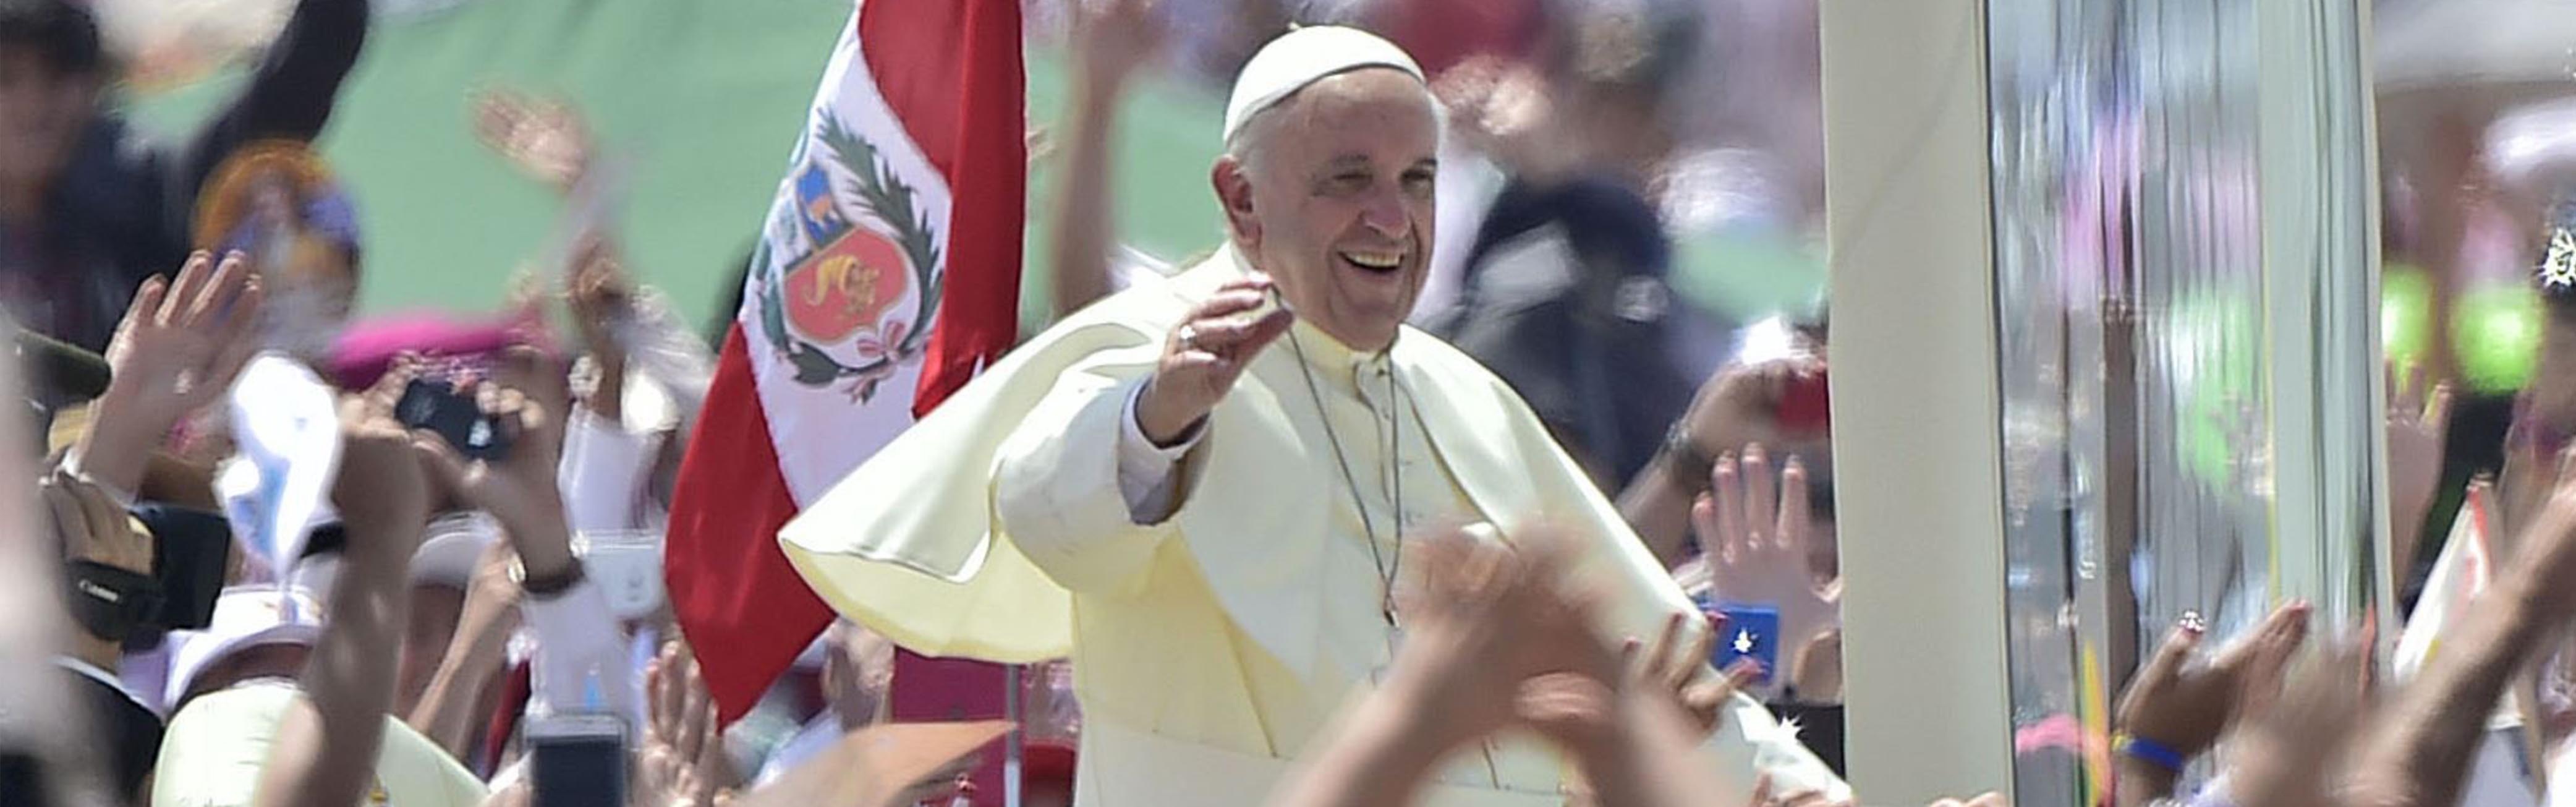 La ruta del Papa Francisco en Perú